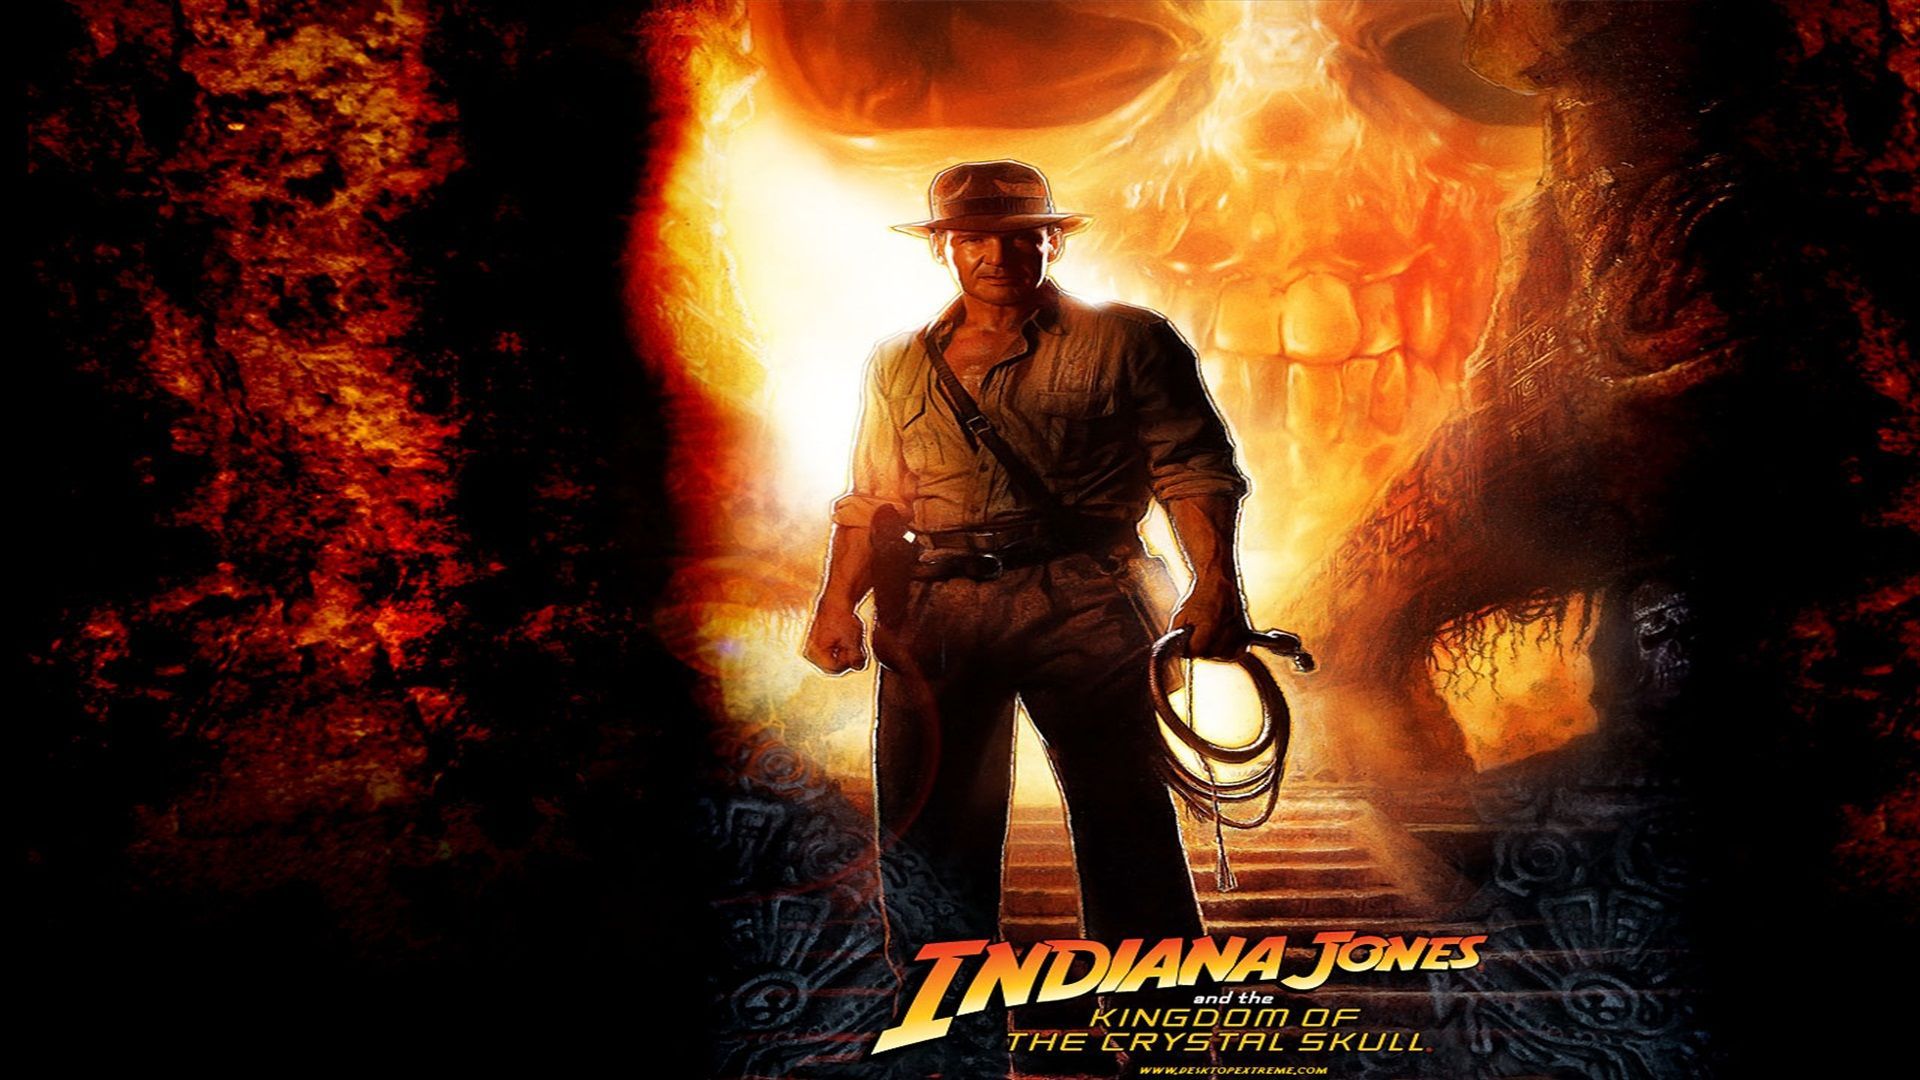 Indiana Jones Wallpaper. Android Jones Wallpaper, Insane Hitman Jones Wallpaper and Indiana Jones Wallpaper